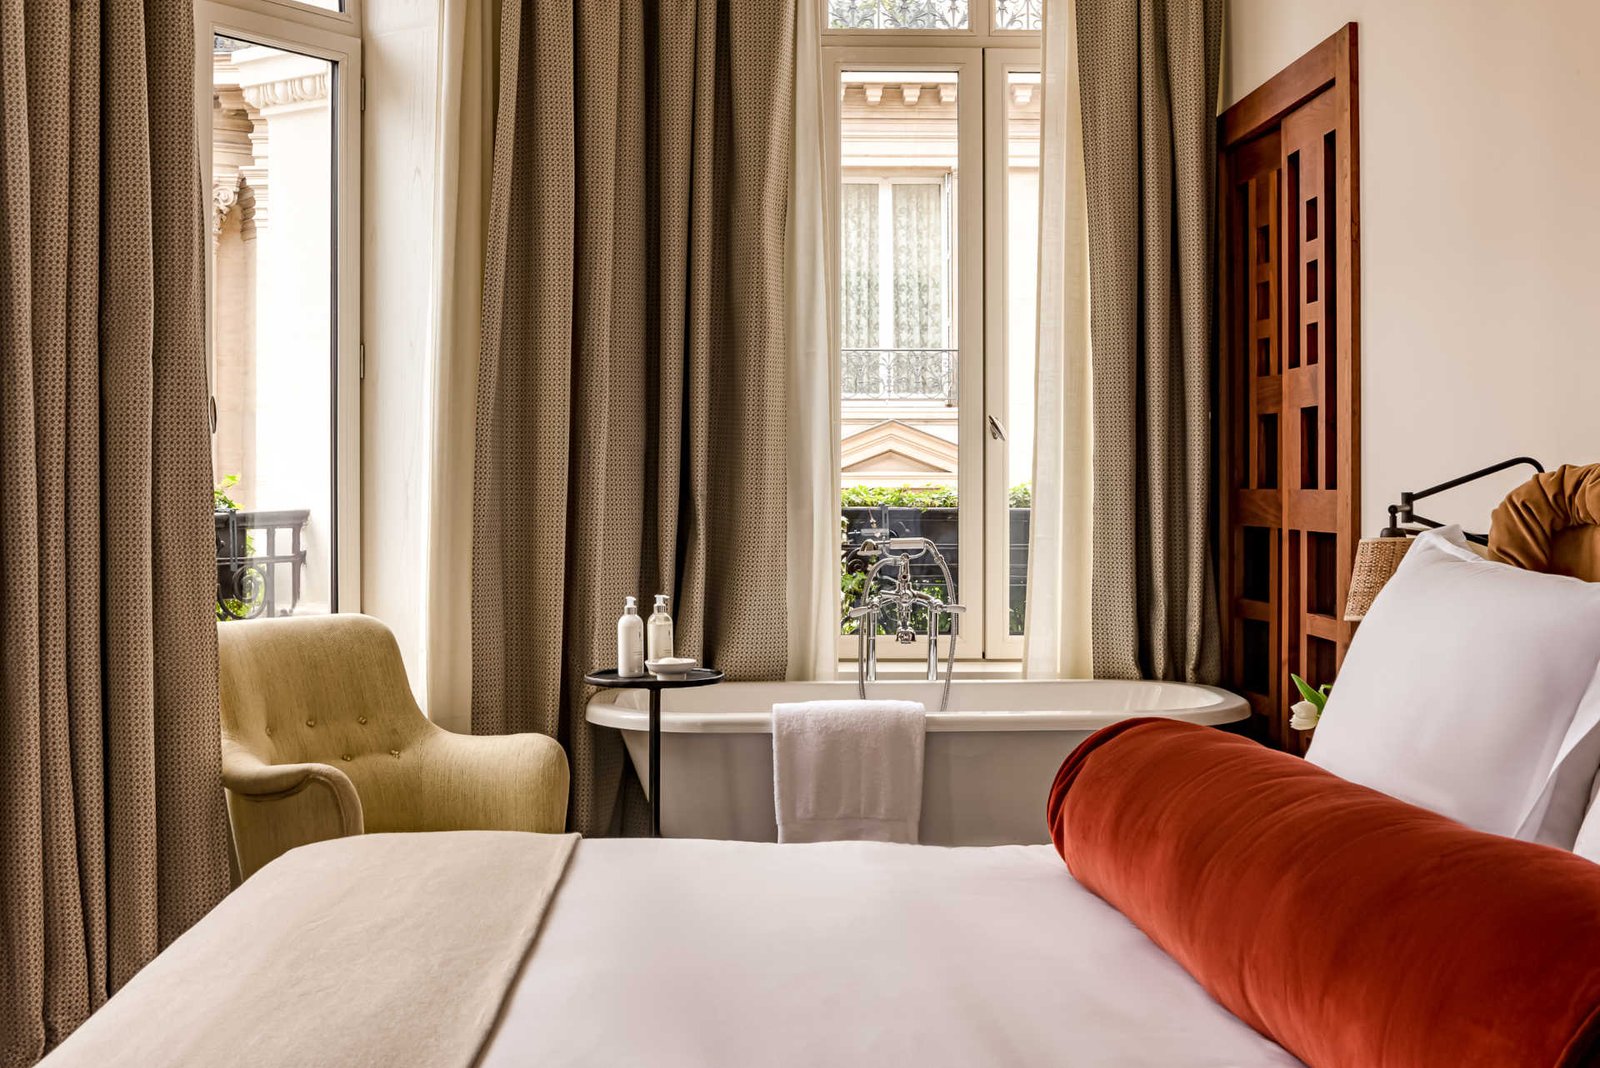 5 Amazing New Hotels Near Champs-Élysées and Arc de Triomphe in Paris